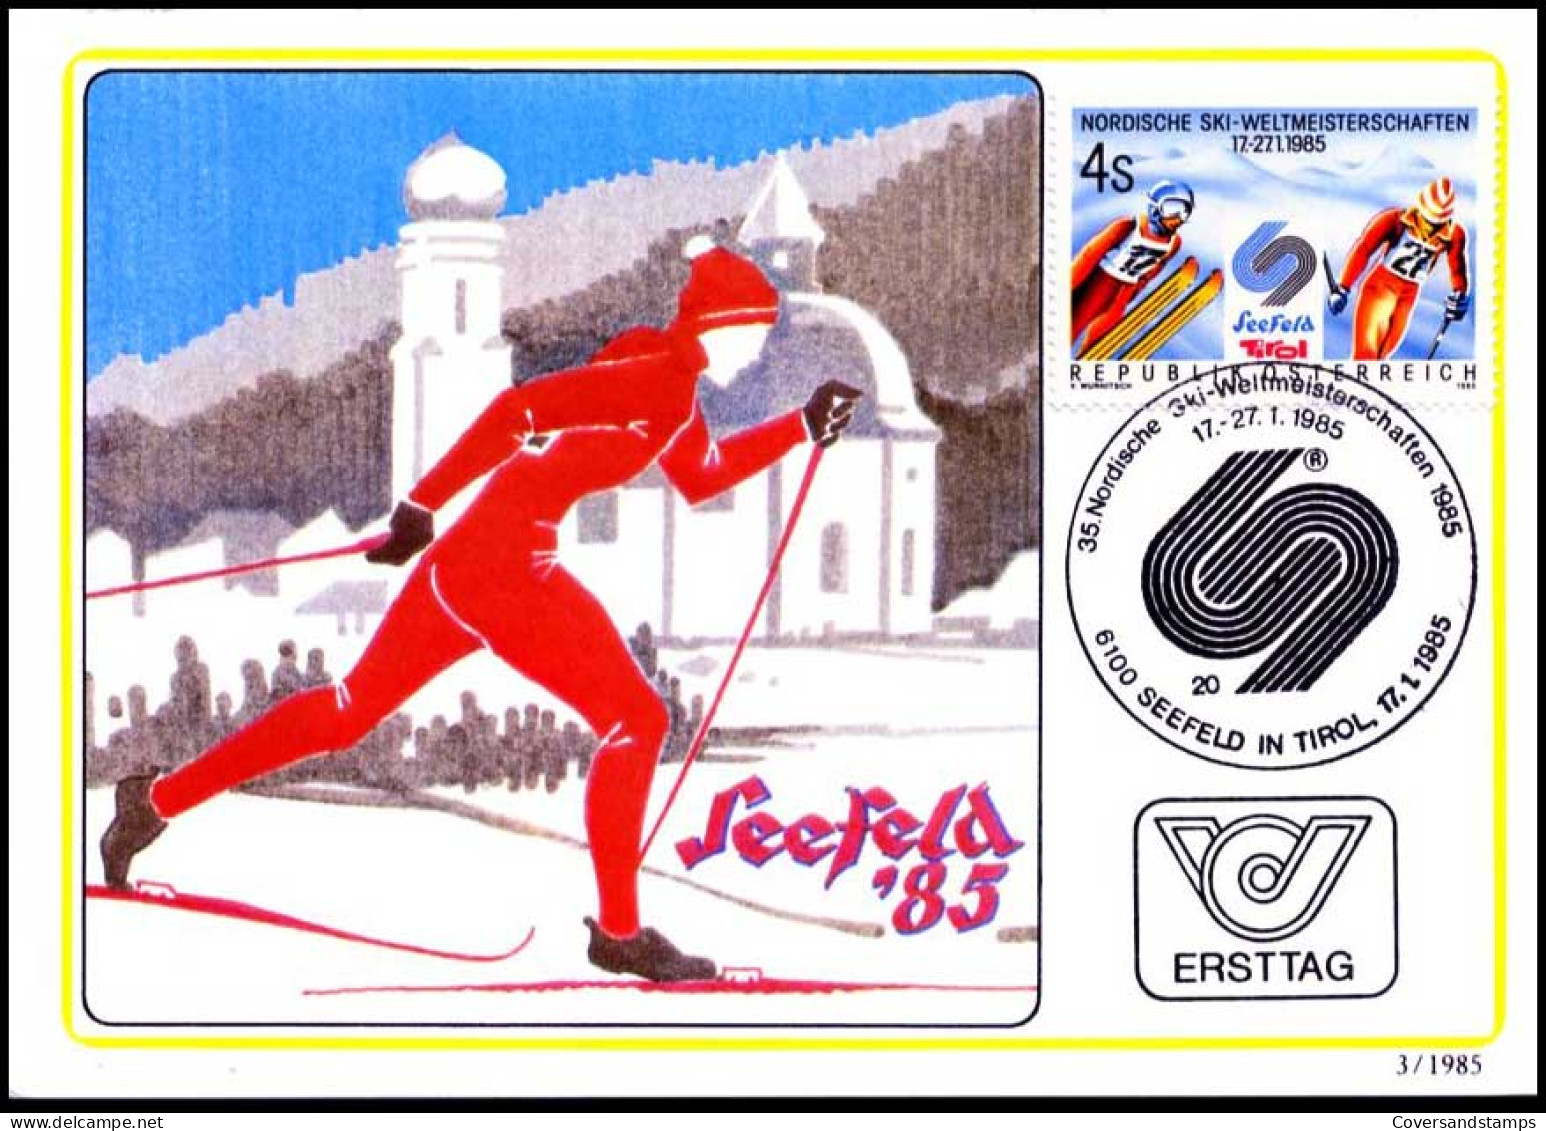 Oostenrijk - MK - Nordische Ski-weltmeisterschaften                                           - Maximumkaarten